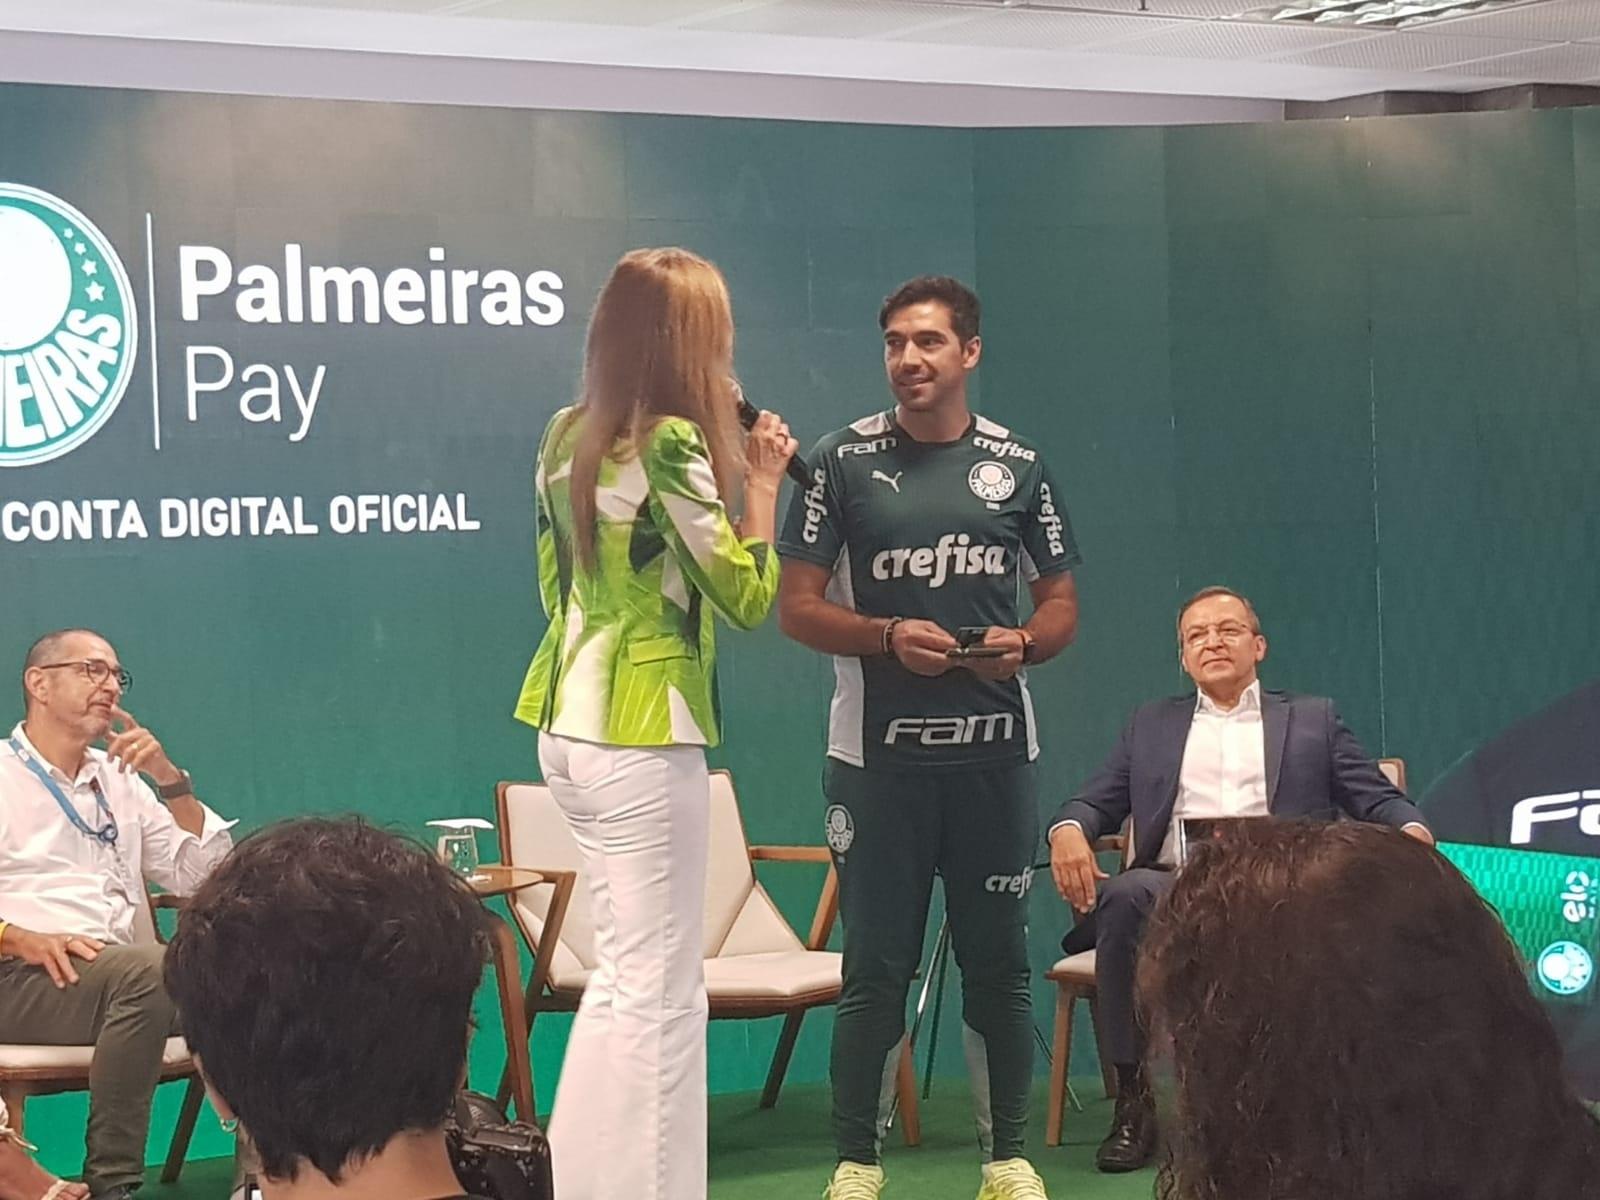 PALMEIRAS PAY: CLUBE LANÇA CONTA DIGITAL GRATUITA E COM BENEFÍCIOS